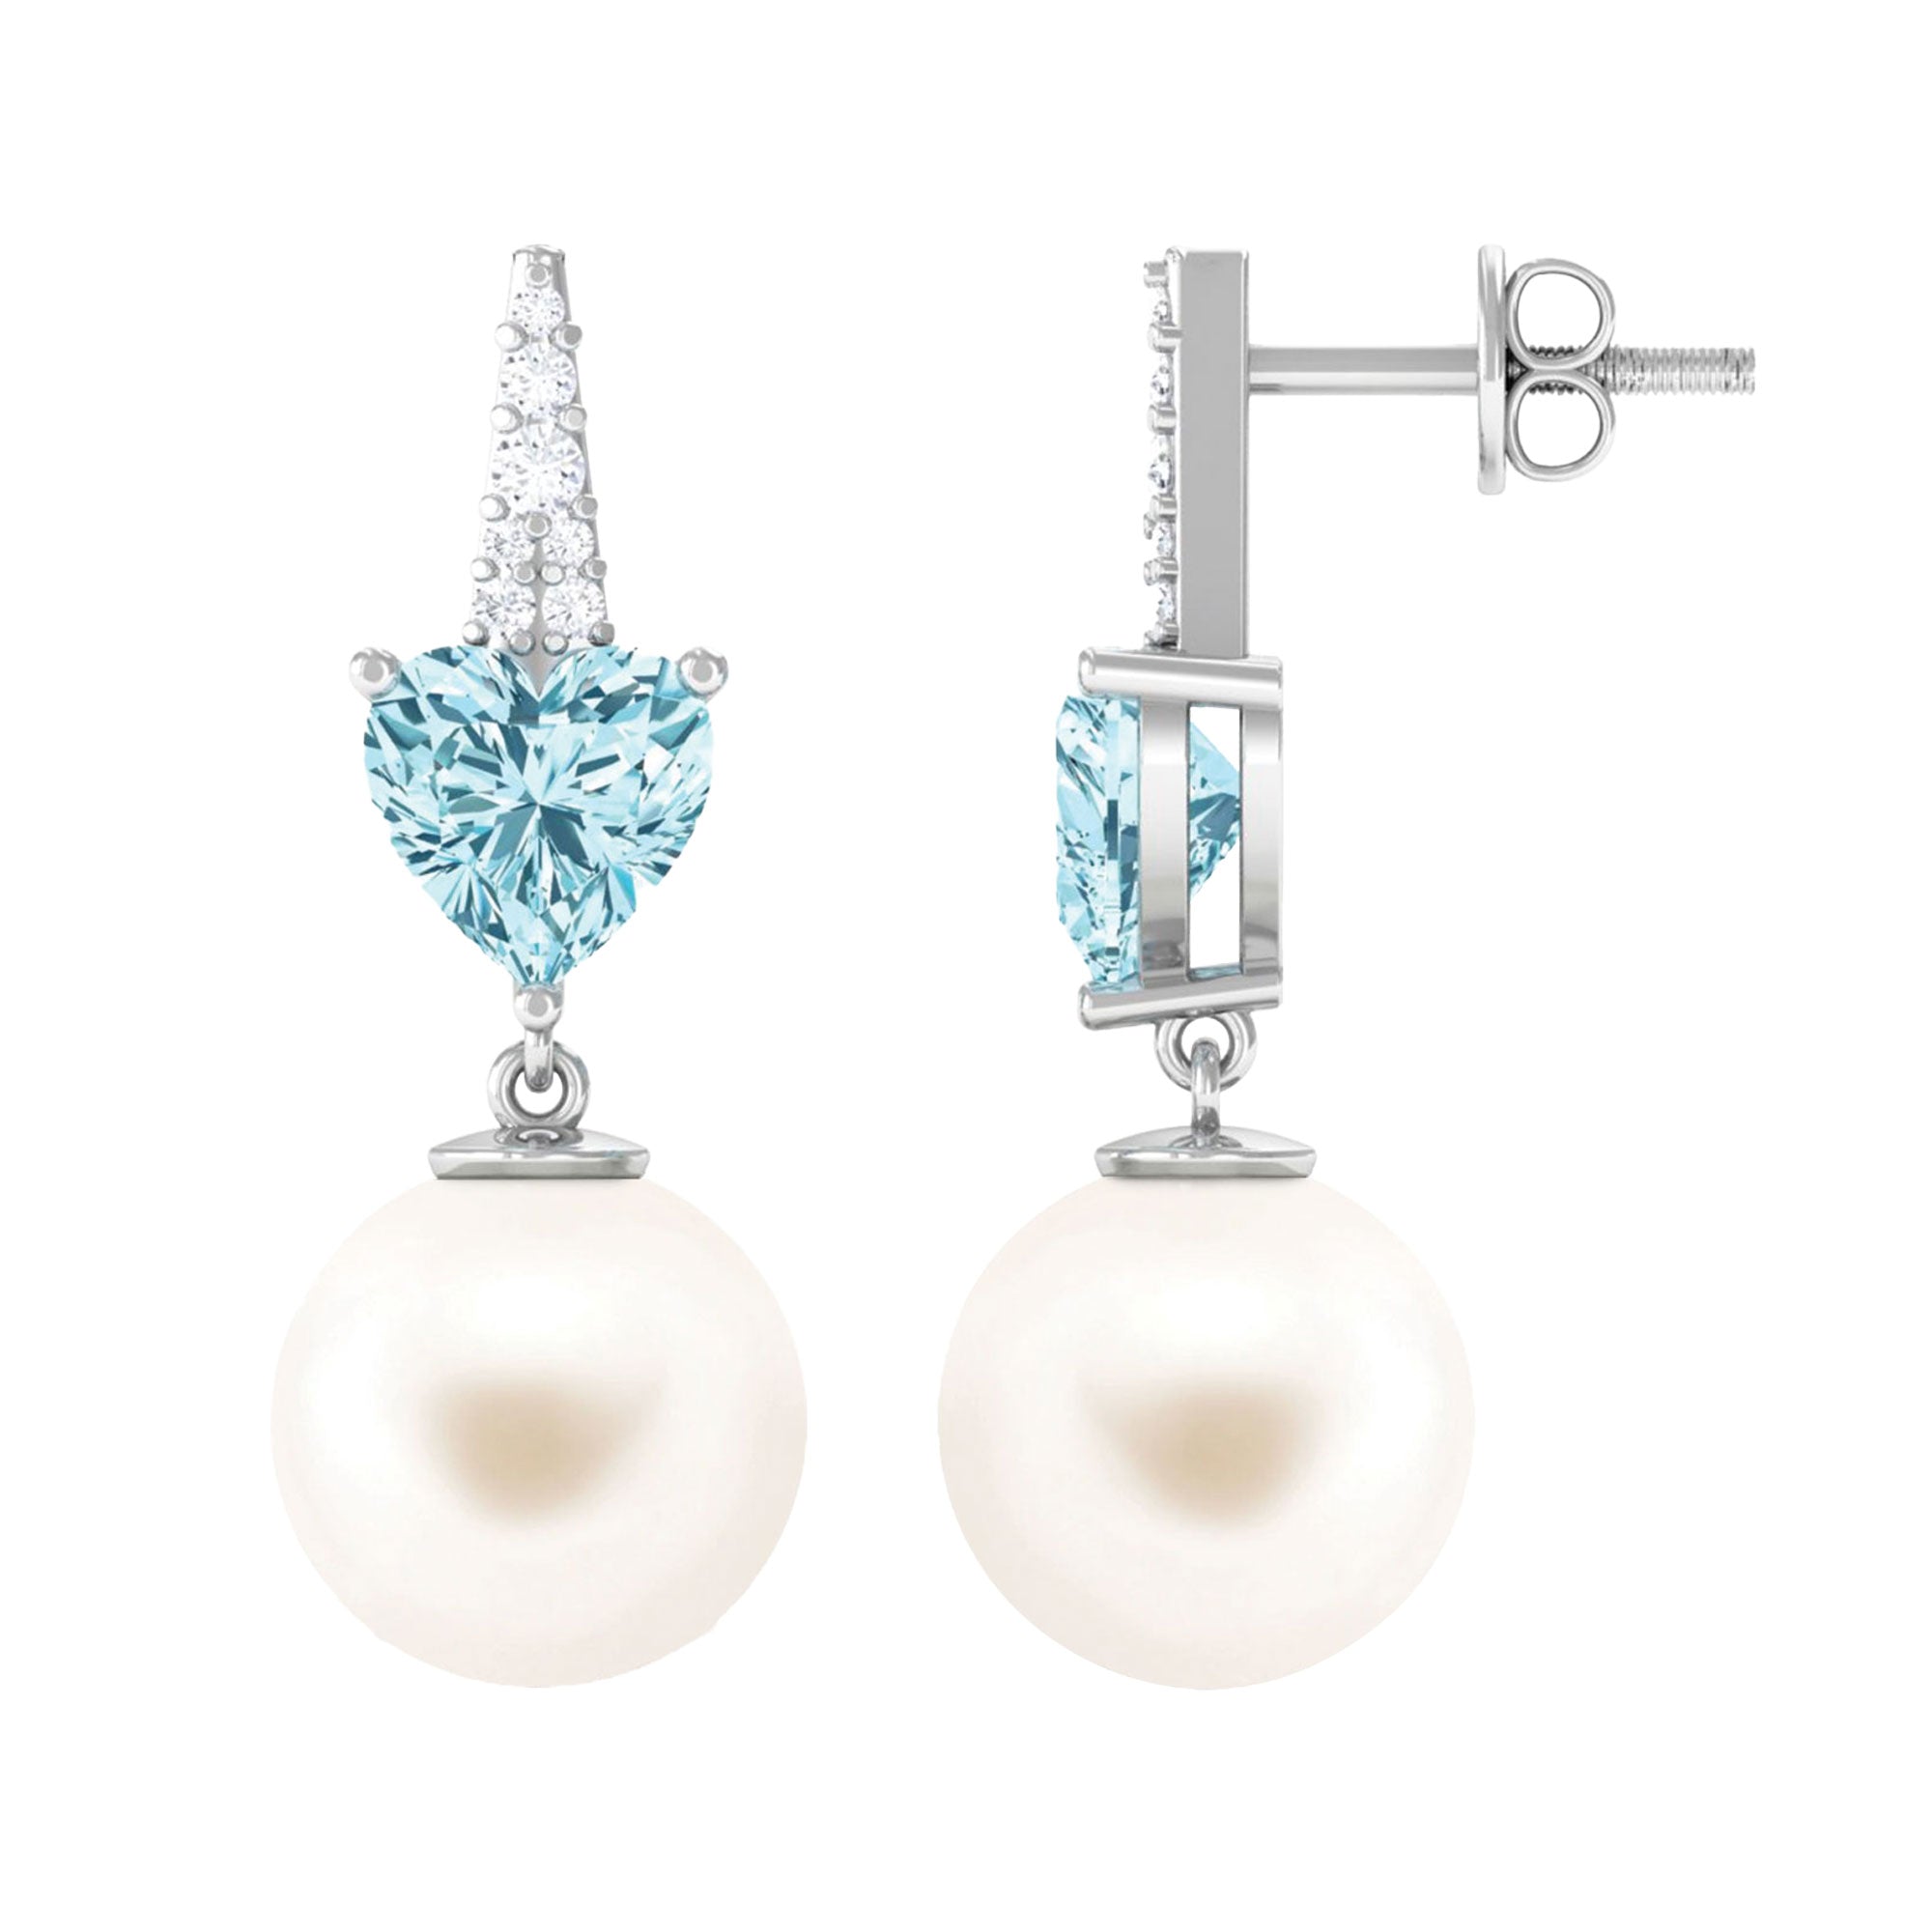 White Freshwater Pearl Drop Earrings with Aquamarine and Diamond Freshwater Pearl-AAA Quality - Arisha Jewels